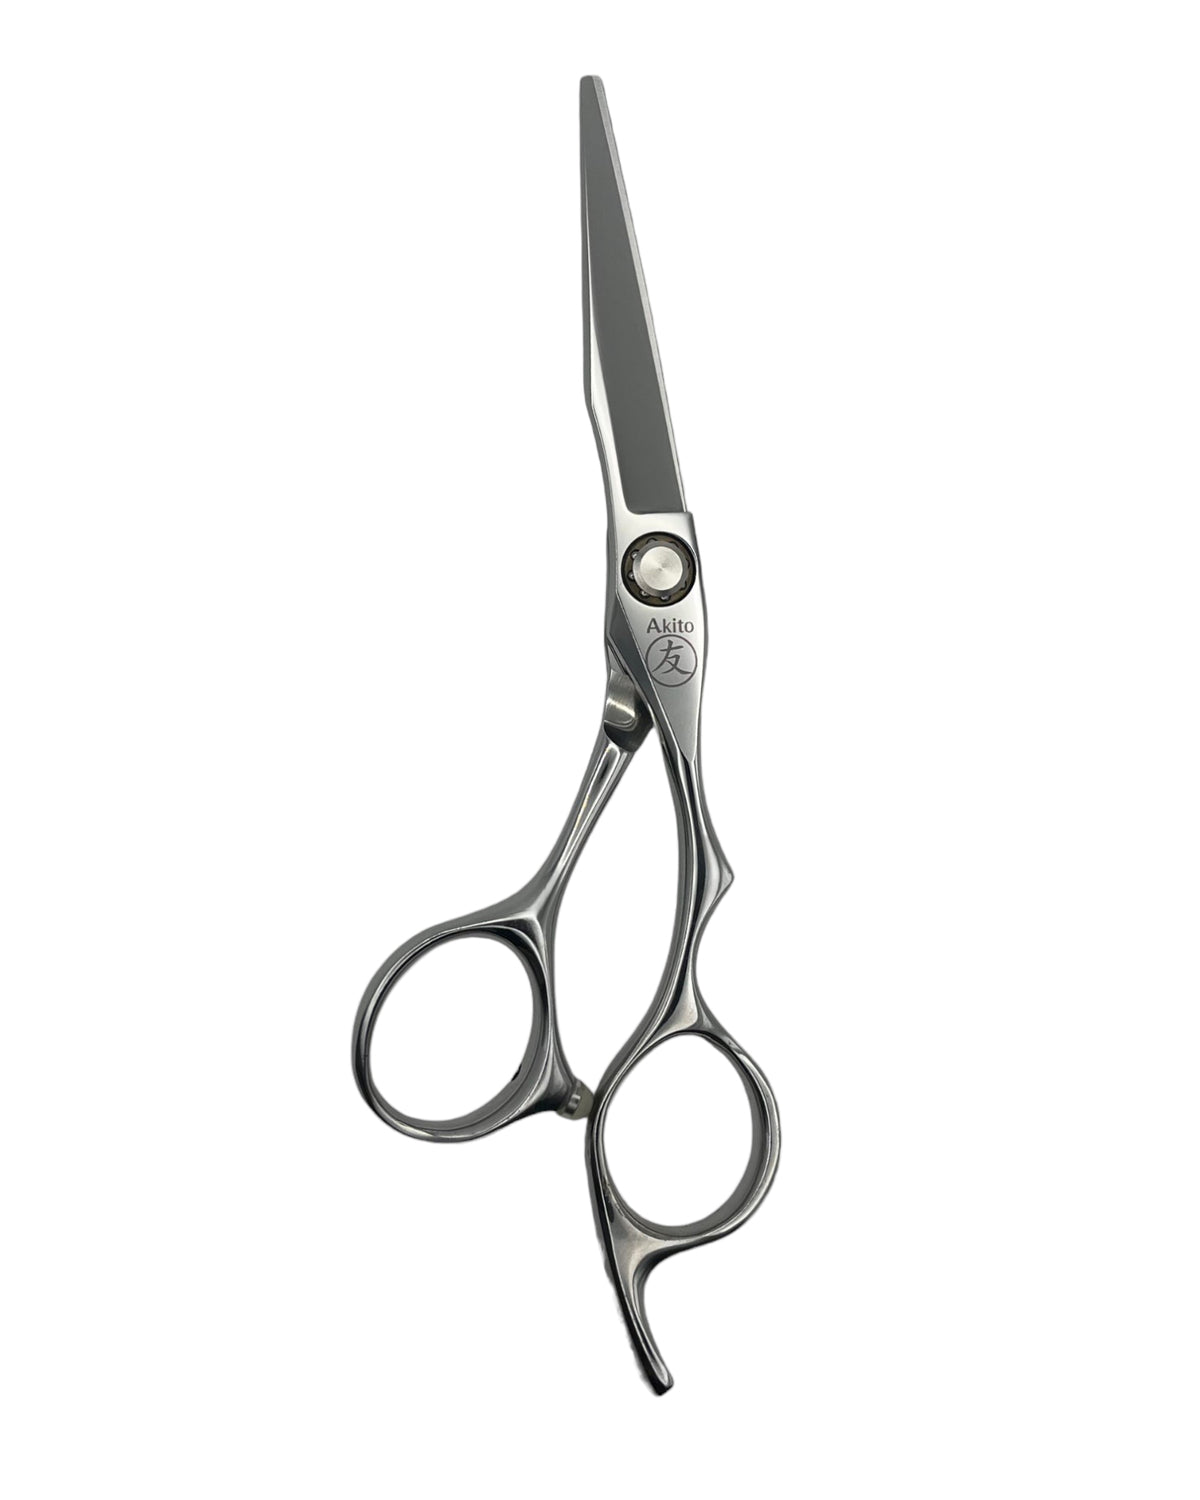 Katana 5.5 inch hair scissors 